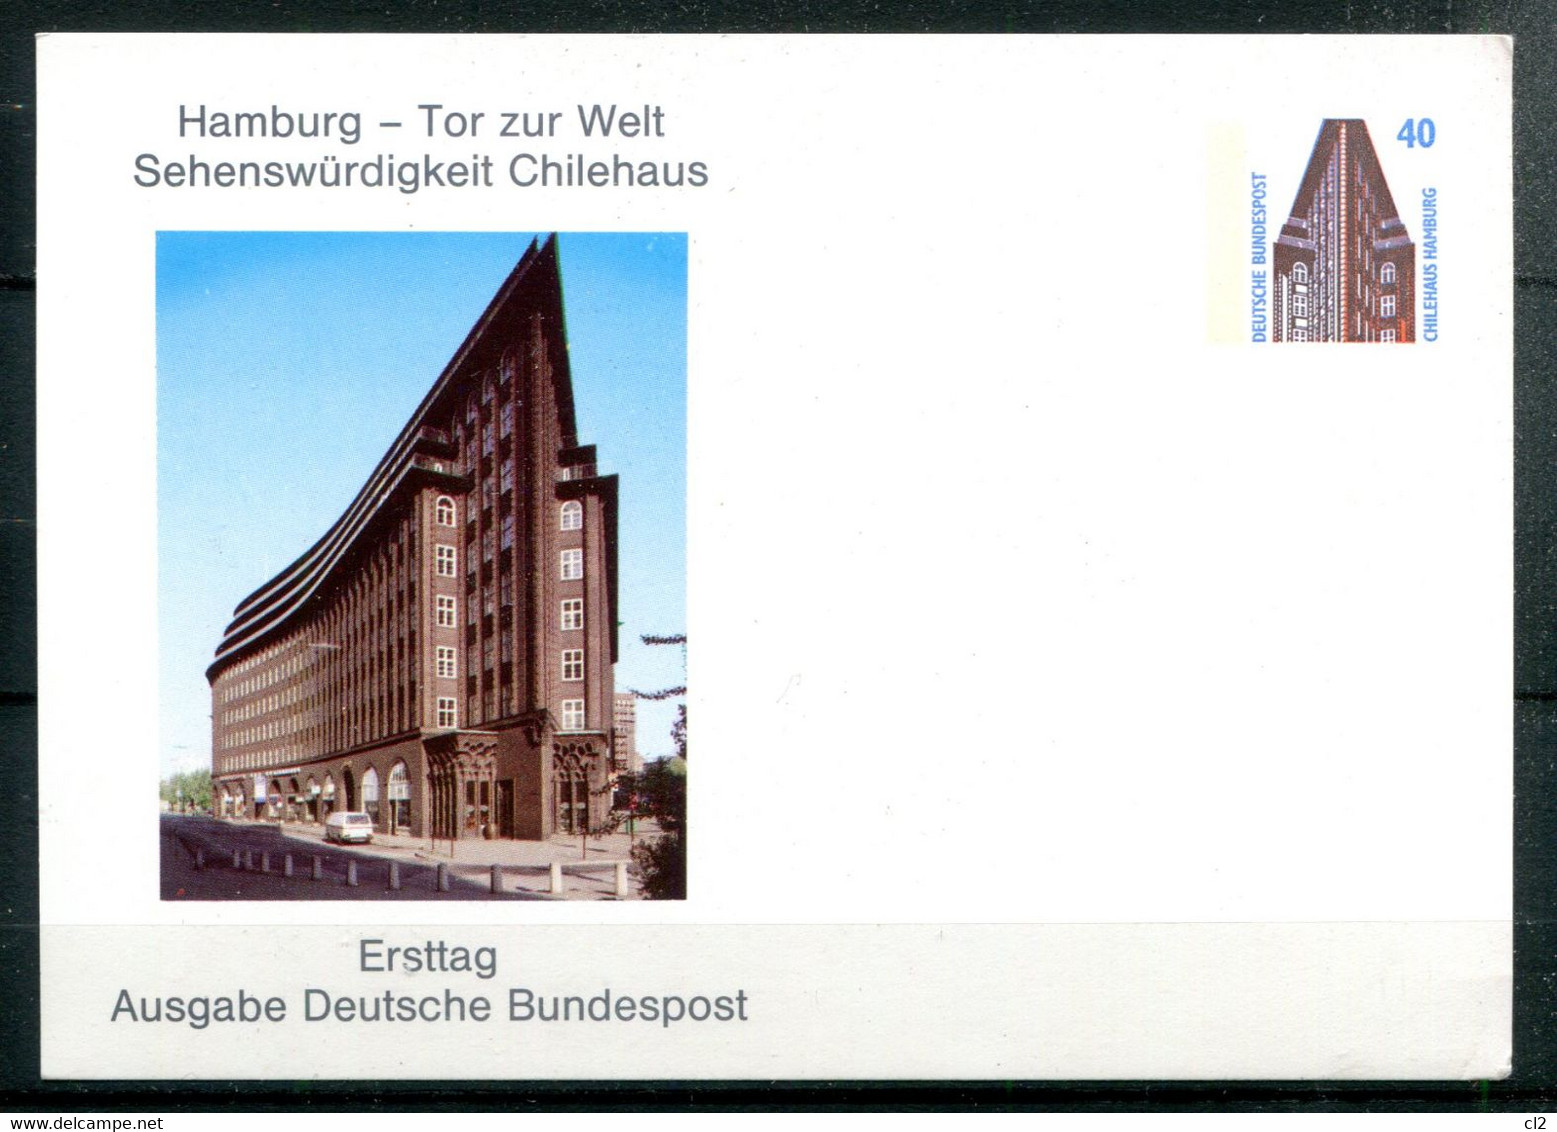 HAMBURG - Tor Zur Welt Sehenswürdigkeit Chilehaus - Ersttag Ausgabe Deutsche Bundespost - Privatpostkarten - Ungebraucht